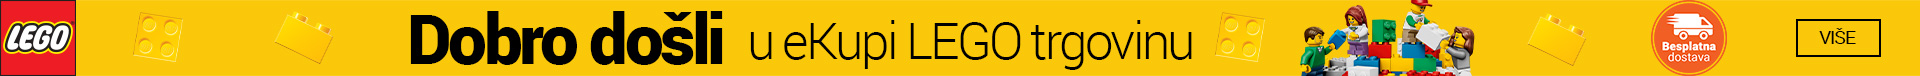 BA-Dobrodosli-u-LEGO-Ducan-450x76-Traka.jpg